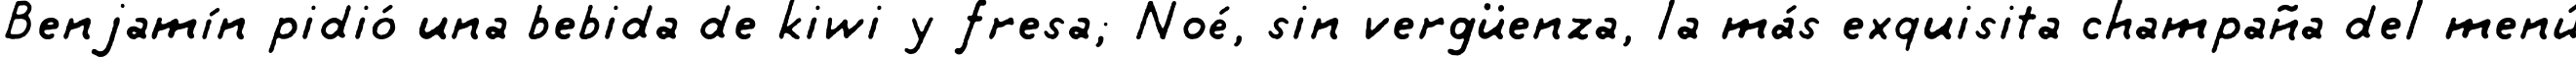 Пример написания шрифтом tintin текста на испанском